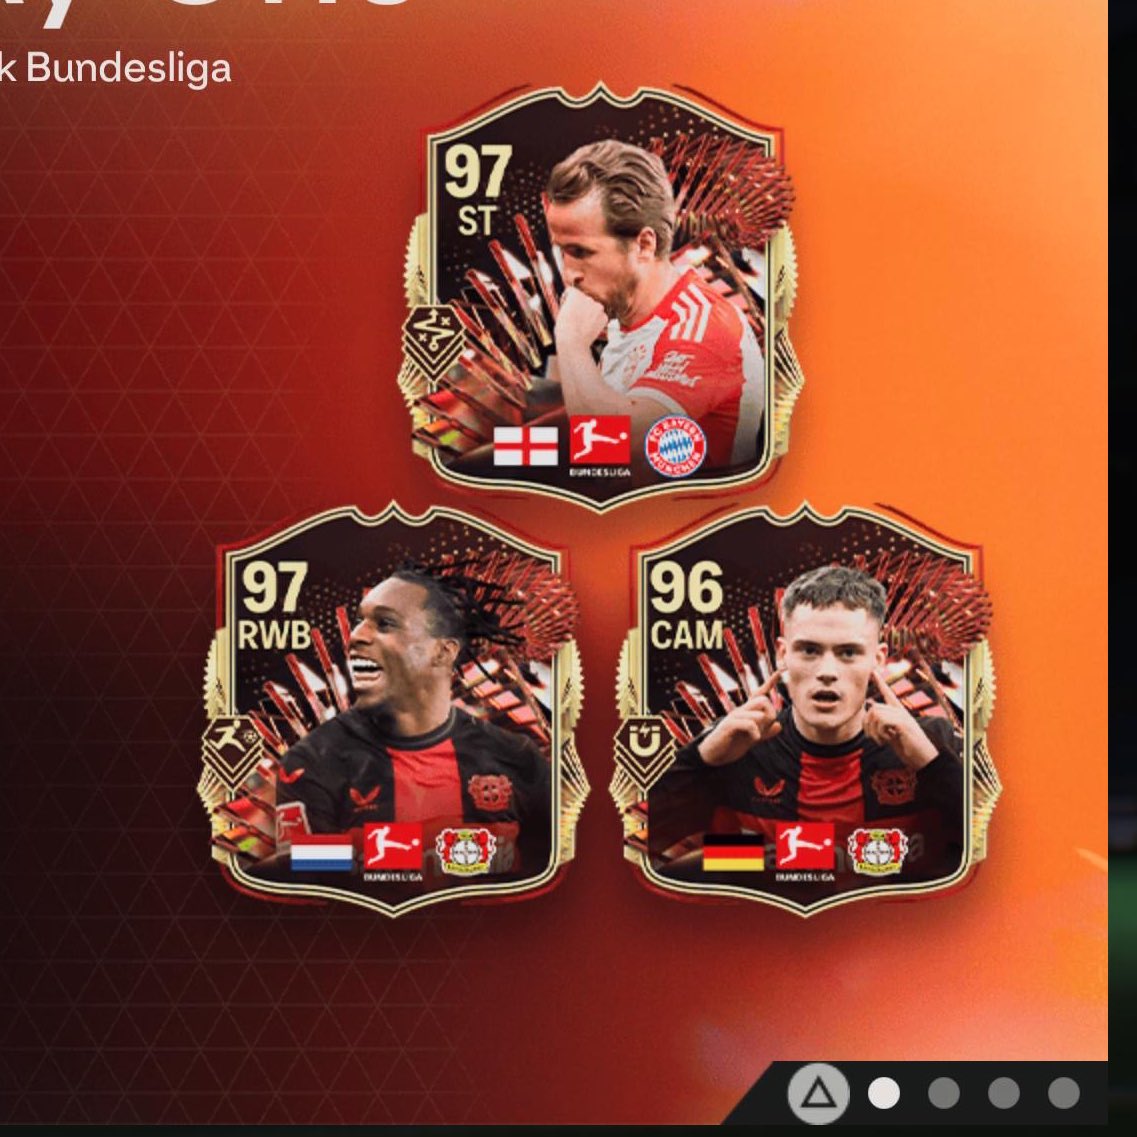 Les 3 premières cartes de la TOTS de Bundesliga ont été dévoilées par EA 😮 🏴󠁧󠁢󠁥󠁮󠁧󠁿 Kane 97 avec Technique + 🇳🇱 Frimpong 97 avec Foulée Rapide + 🇩🇪 Wirtz 96 avec Contrôle + RDV ce soir pour l'Équipe complète + l'Équipe de Bundesliga féminine 🔥